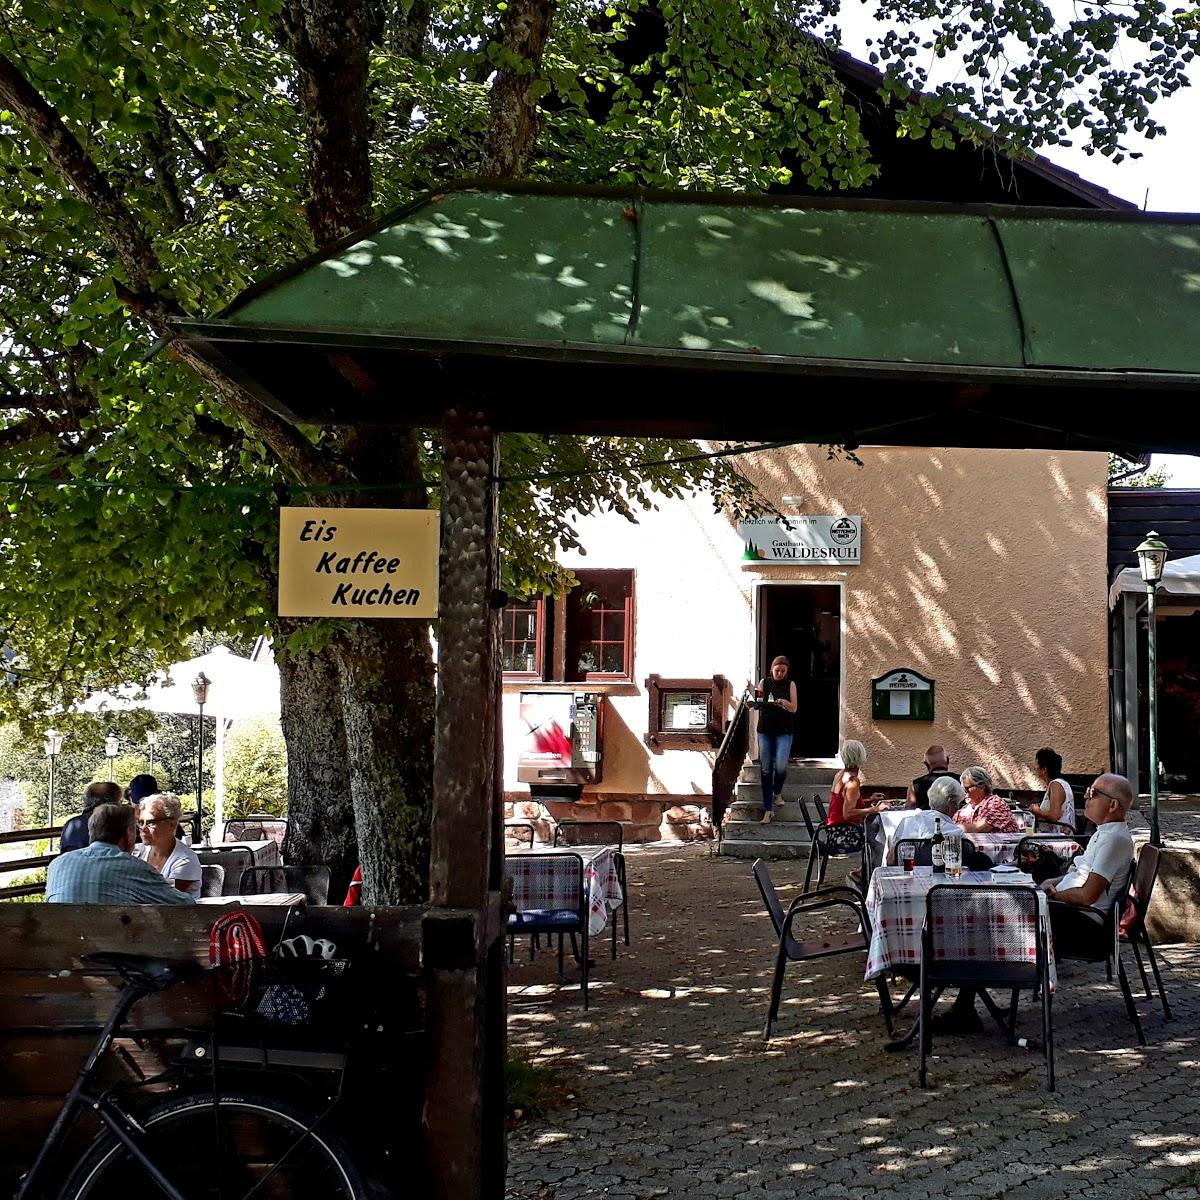 Restaurant "Gasthaus Waldesruh" in Forbach